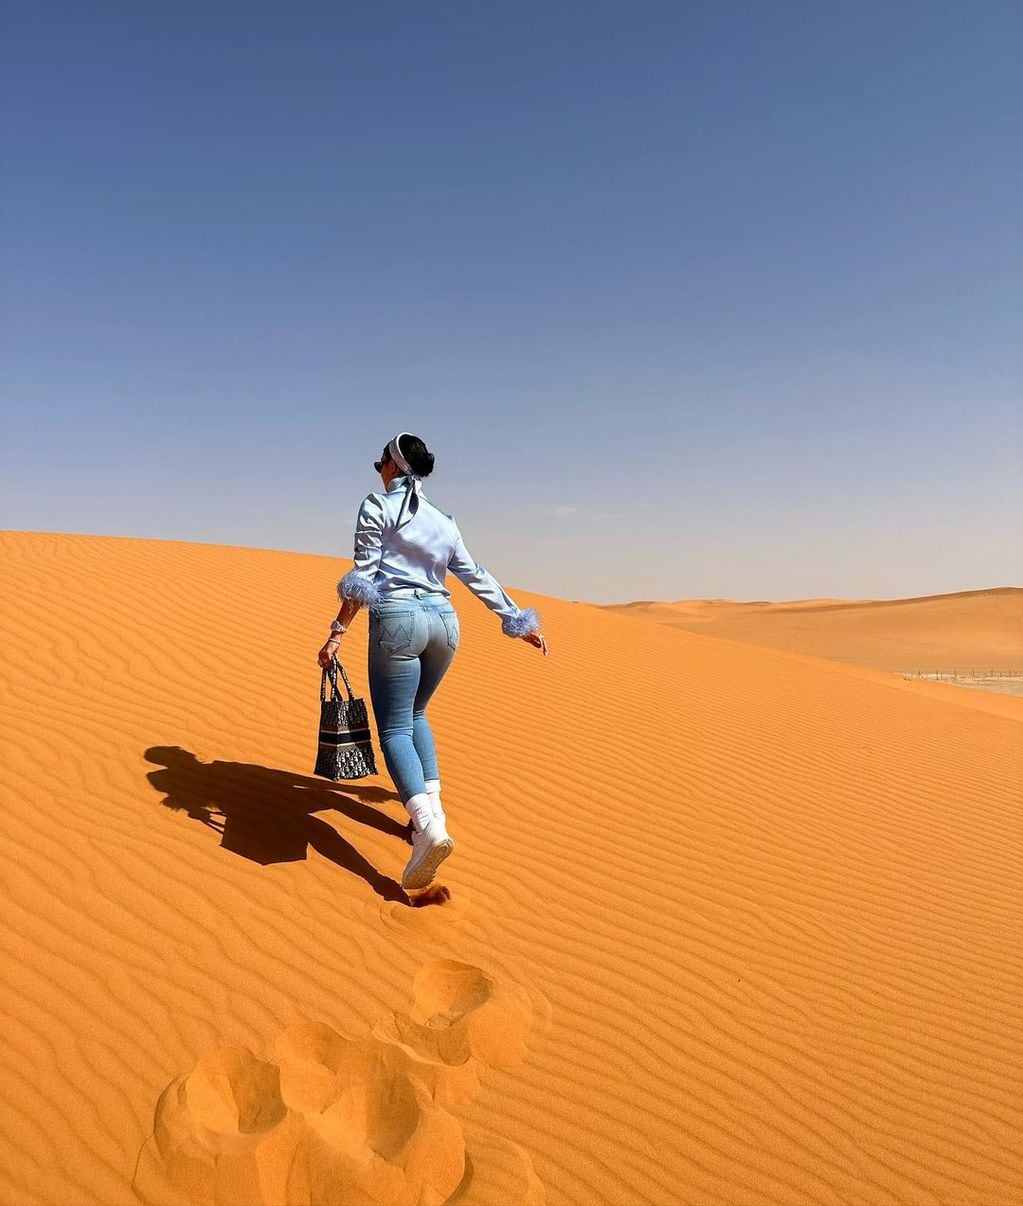 La modelo Georgina Rodríguez "conquistó" el desierto con un look a puro lujo